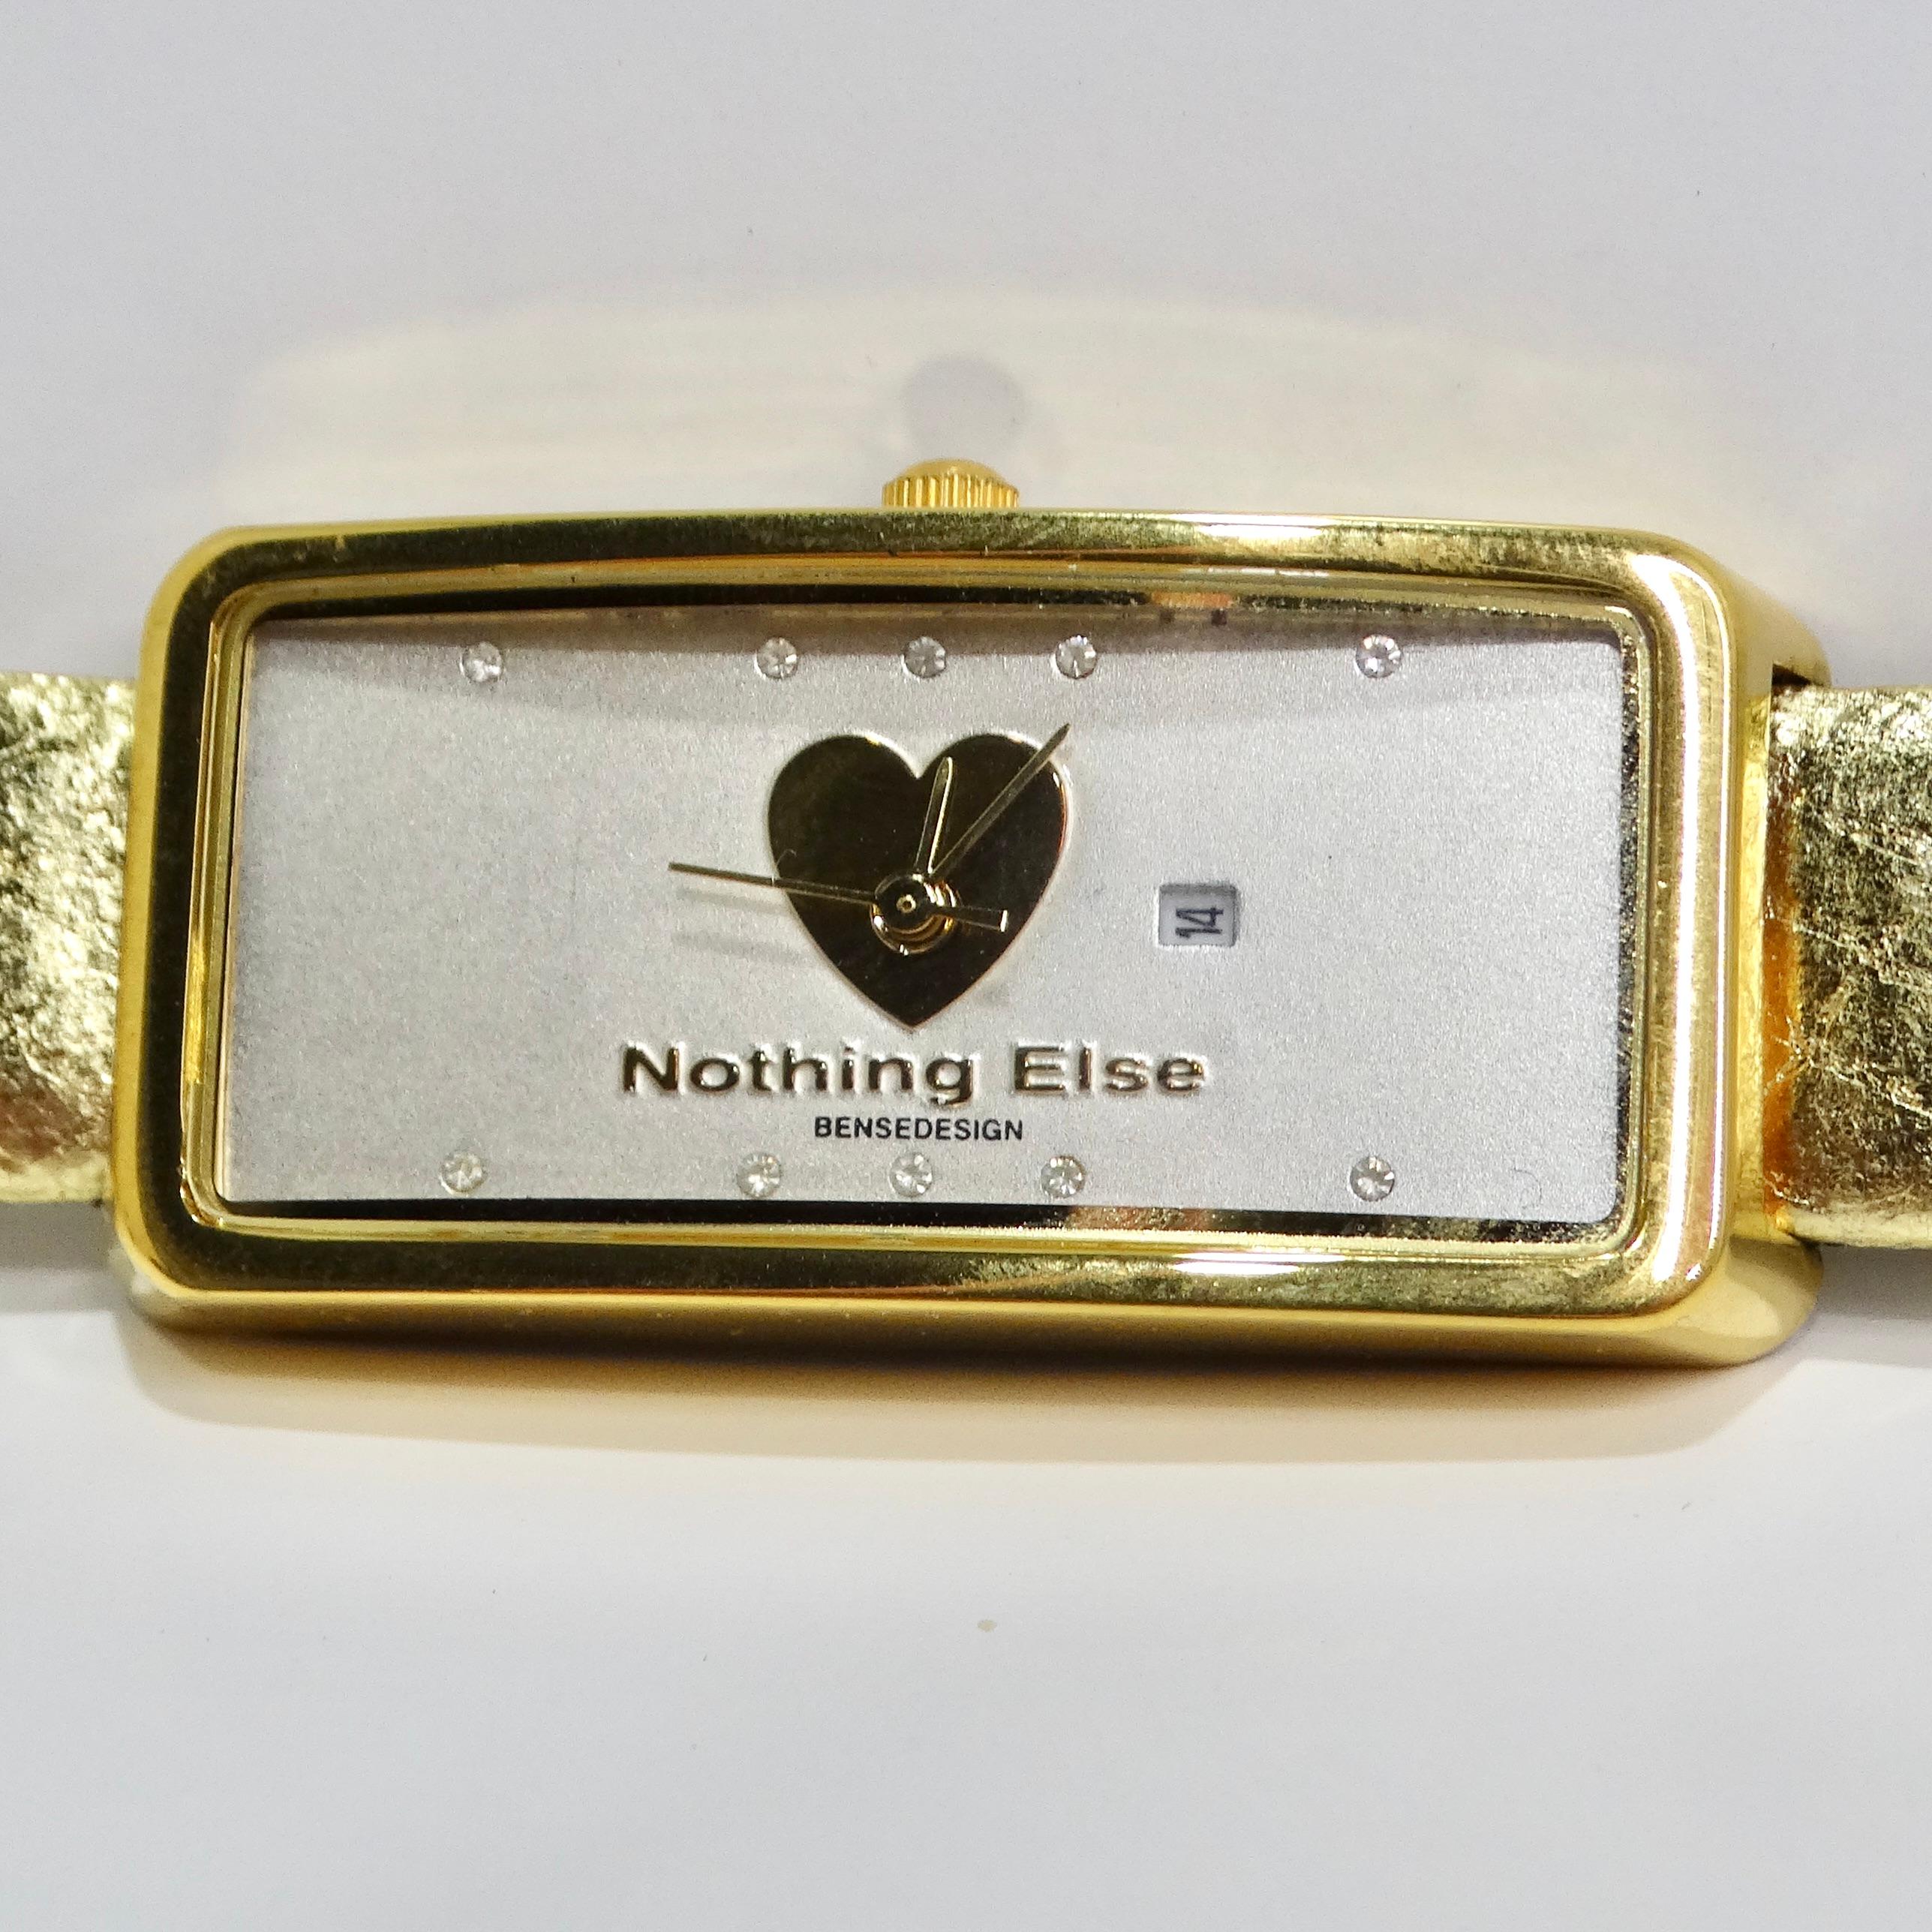 Die Moschino 1980s Gold Tone Watch ist ein einzigartiger Zeitmesser, der Vintage-Charme und einen verspielten Stil ausstrahlt. Diese Deadstock-Uhr von Moschino hat ein goldfarbenes Kunstlederband mit Pythonprägung, das jedem Outfit einen Hauch von